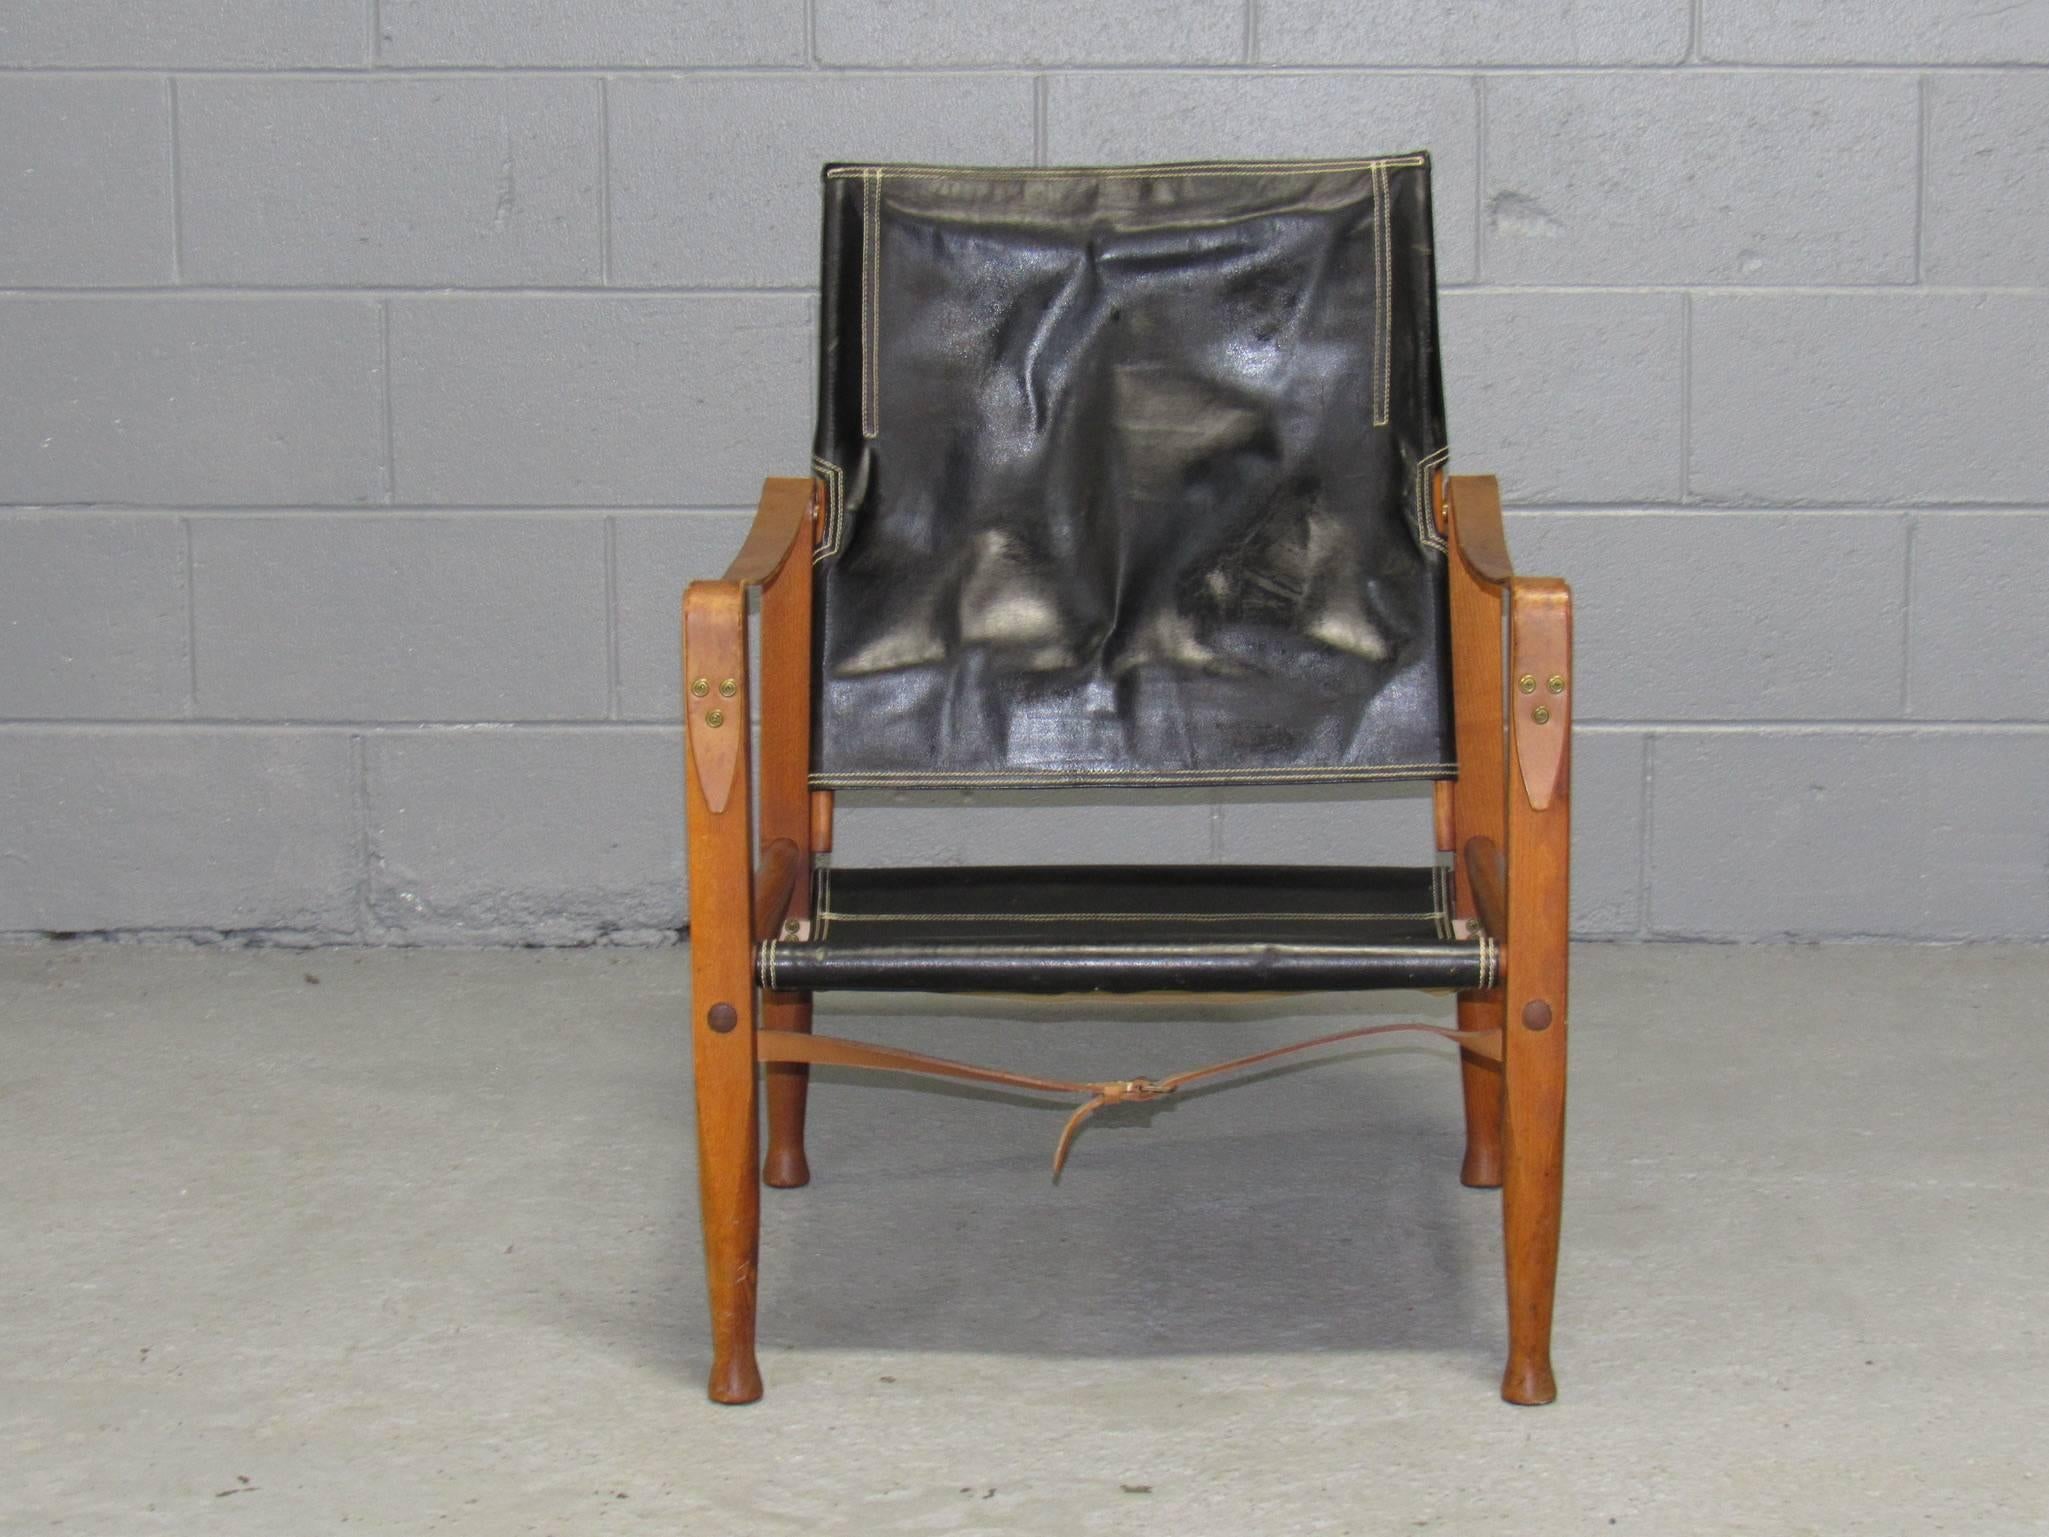 L'architecte et designer de meubles danois Kaare Klint a conçu cette chaise safari pour le fabricant Rud Rasmussen.
 